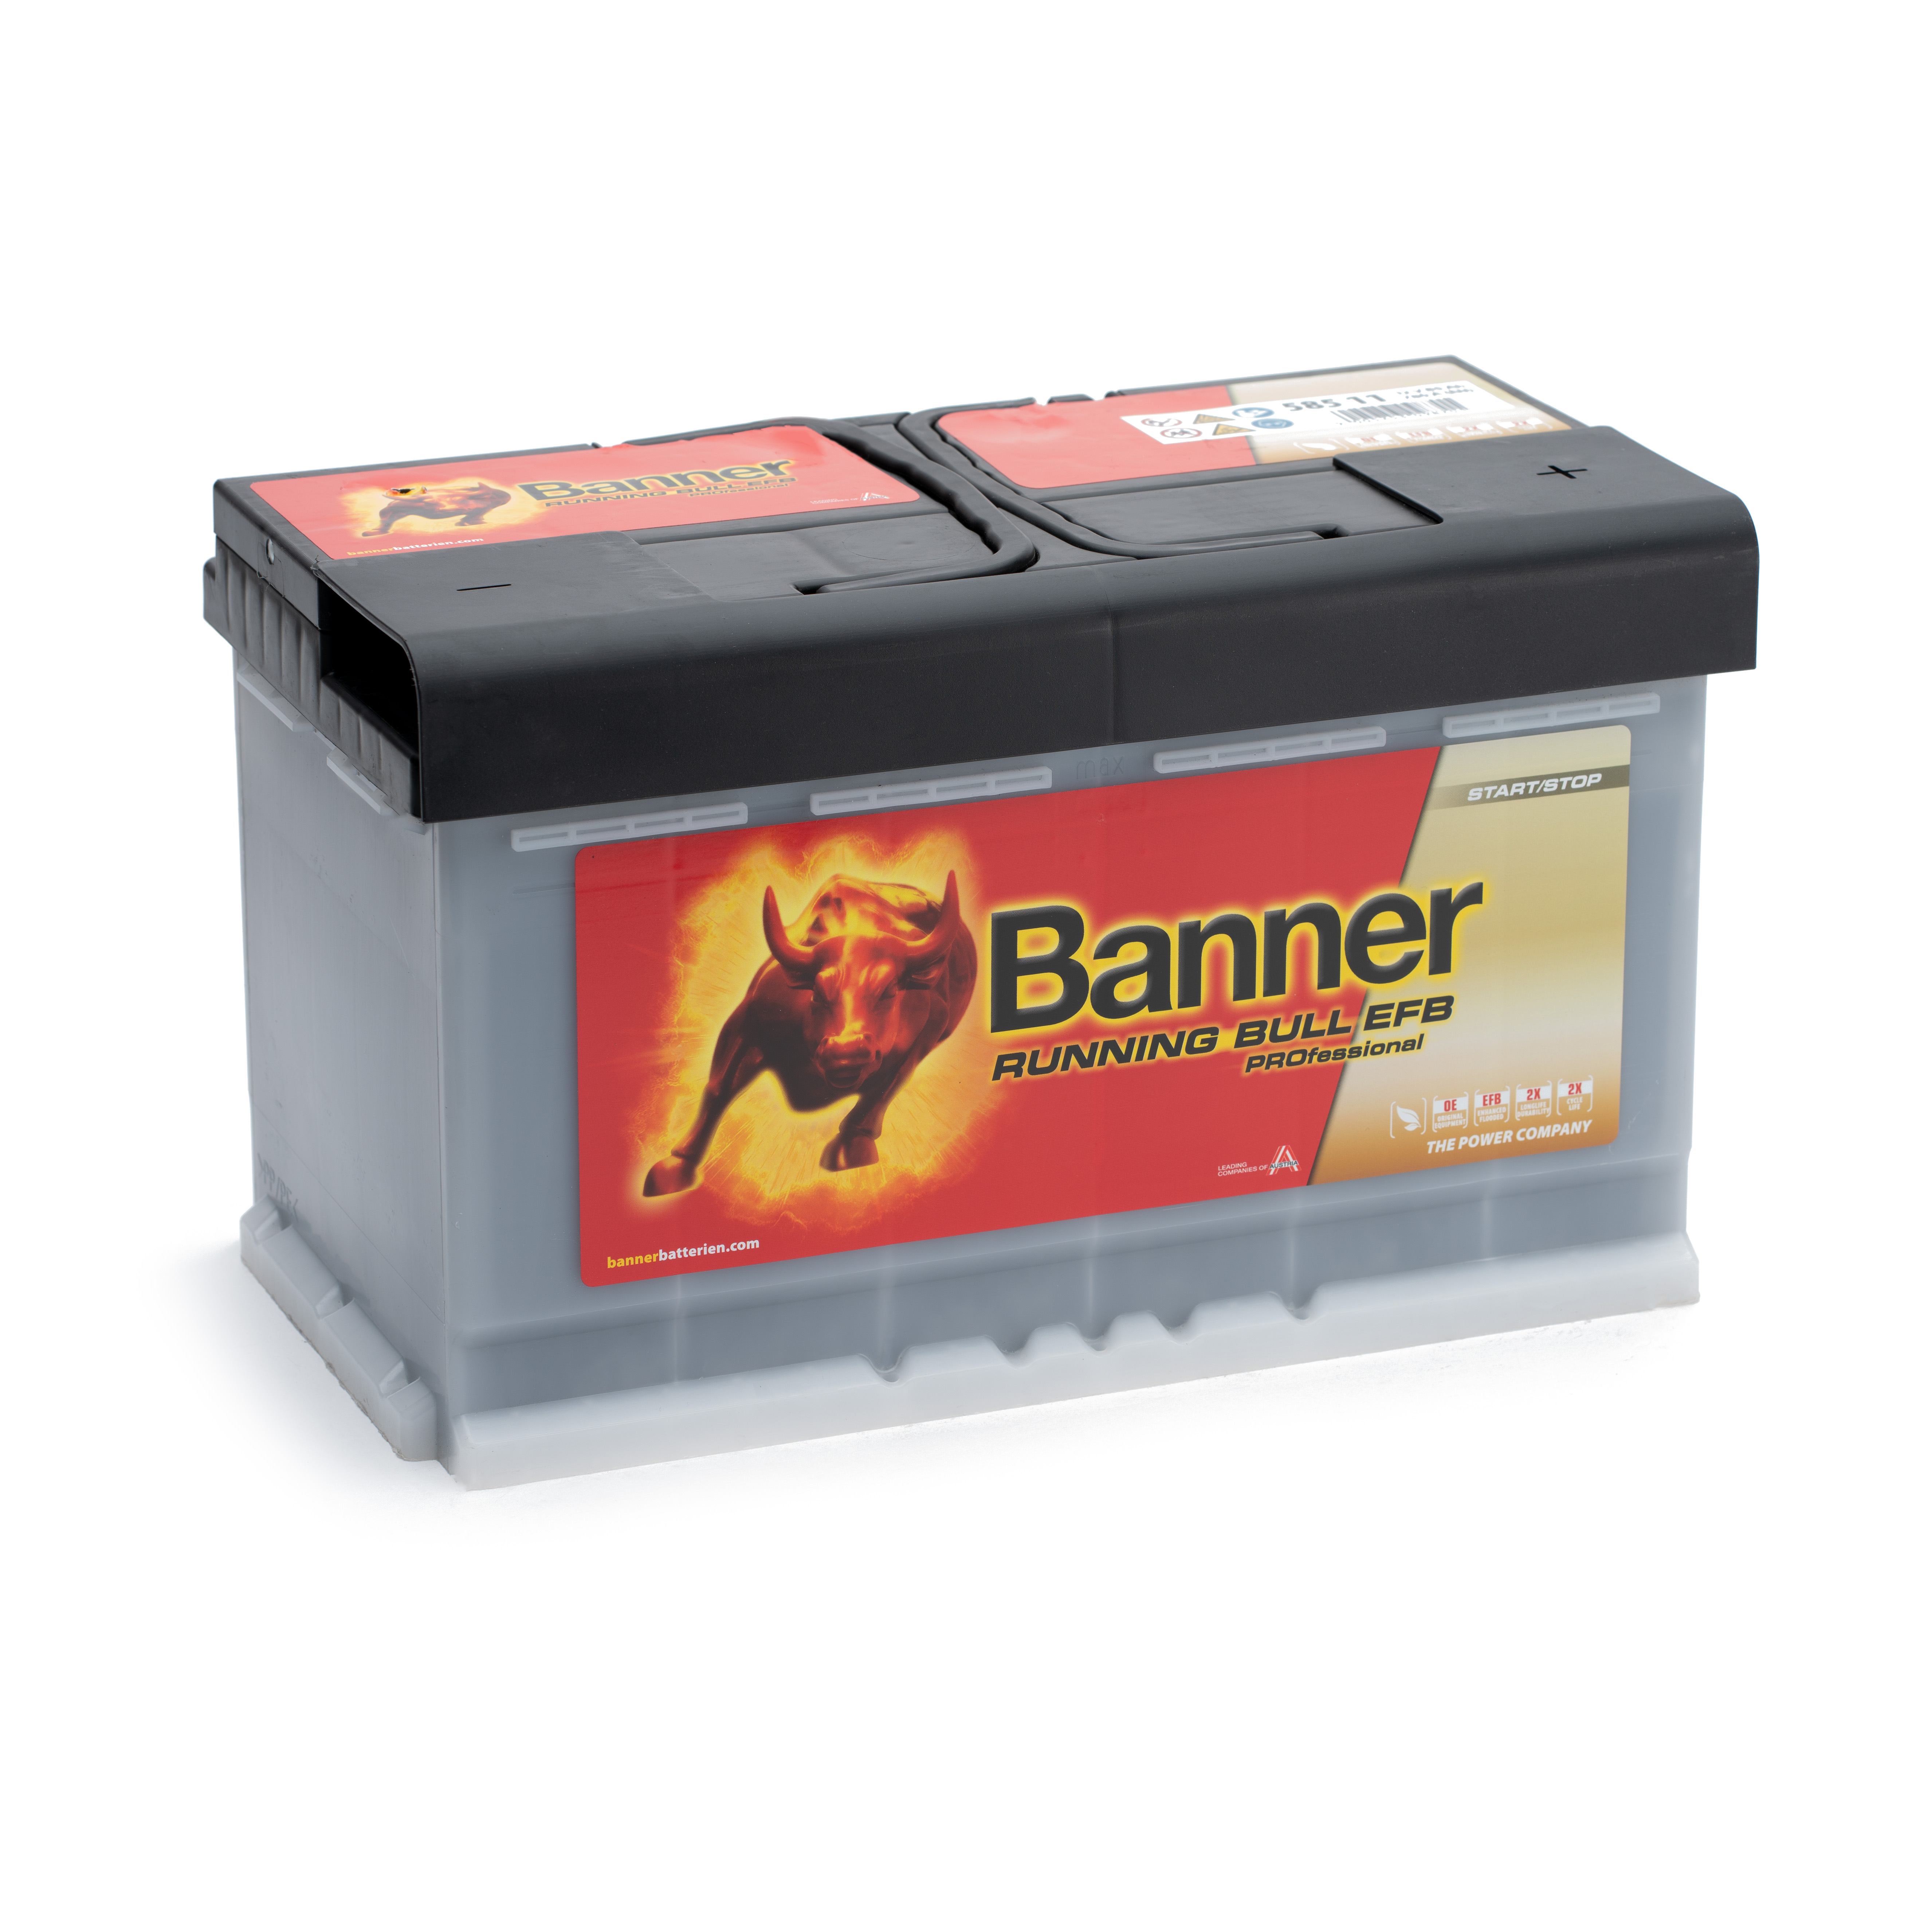 Banner 585 11 Running Bull EFB Autobatterie 85Ah 580 500 080